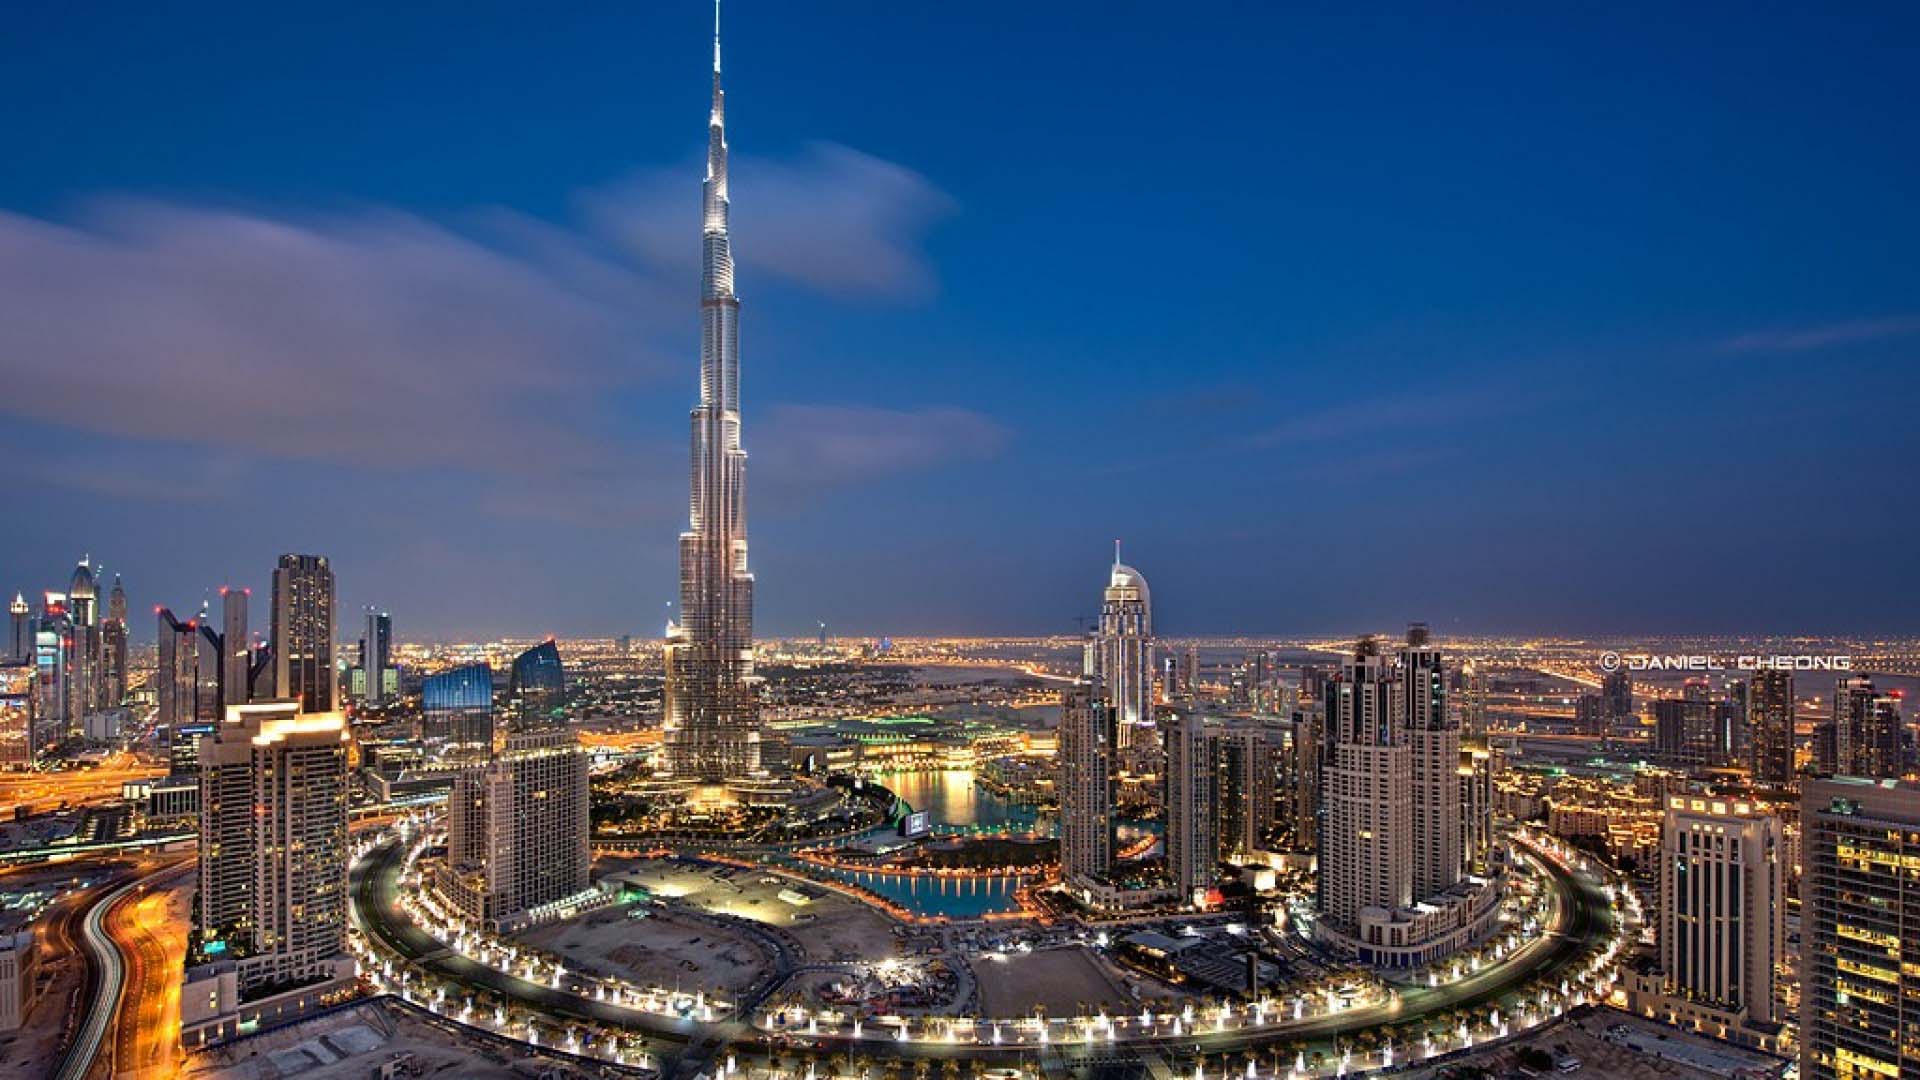 Download Wallpapers Dubai City Guide Wallpaper Top